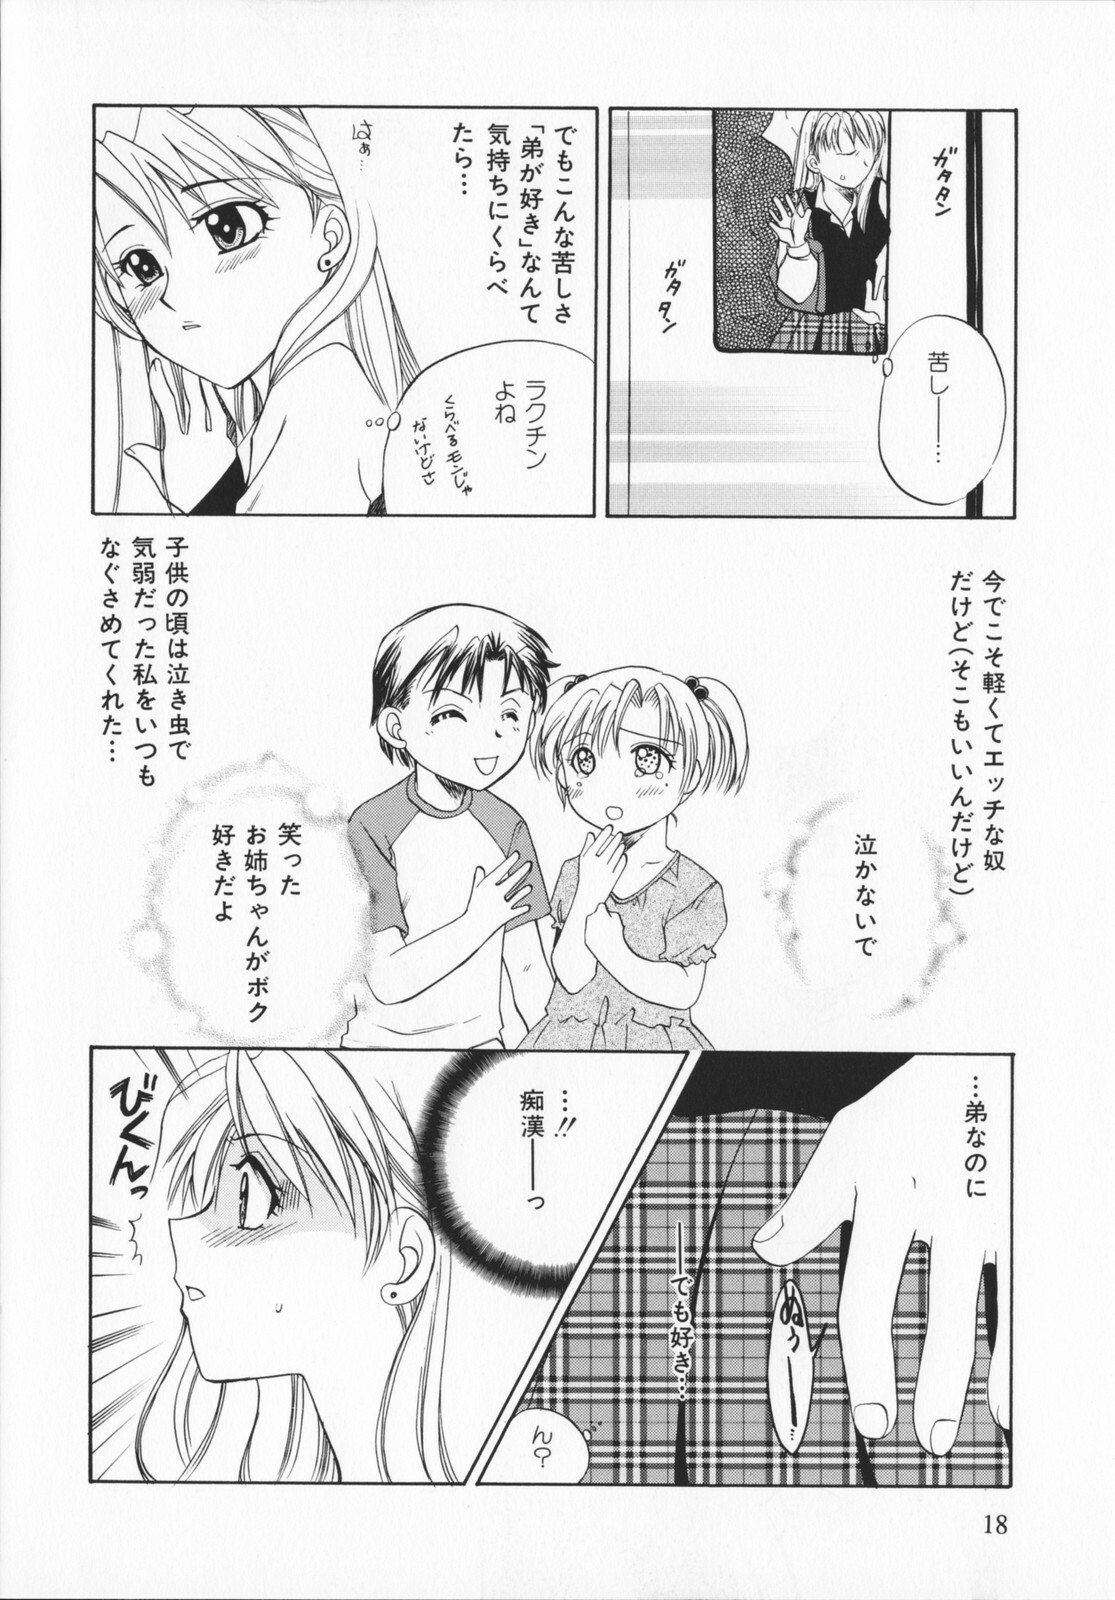 [Ureshino Megumi]Genkaiharetsu (LIMIT EXPLOSION) page 17 full